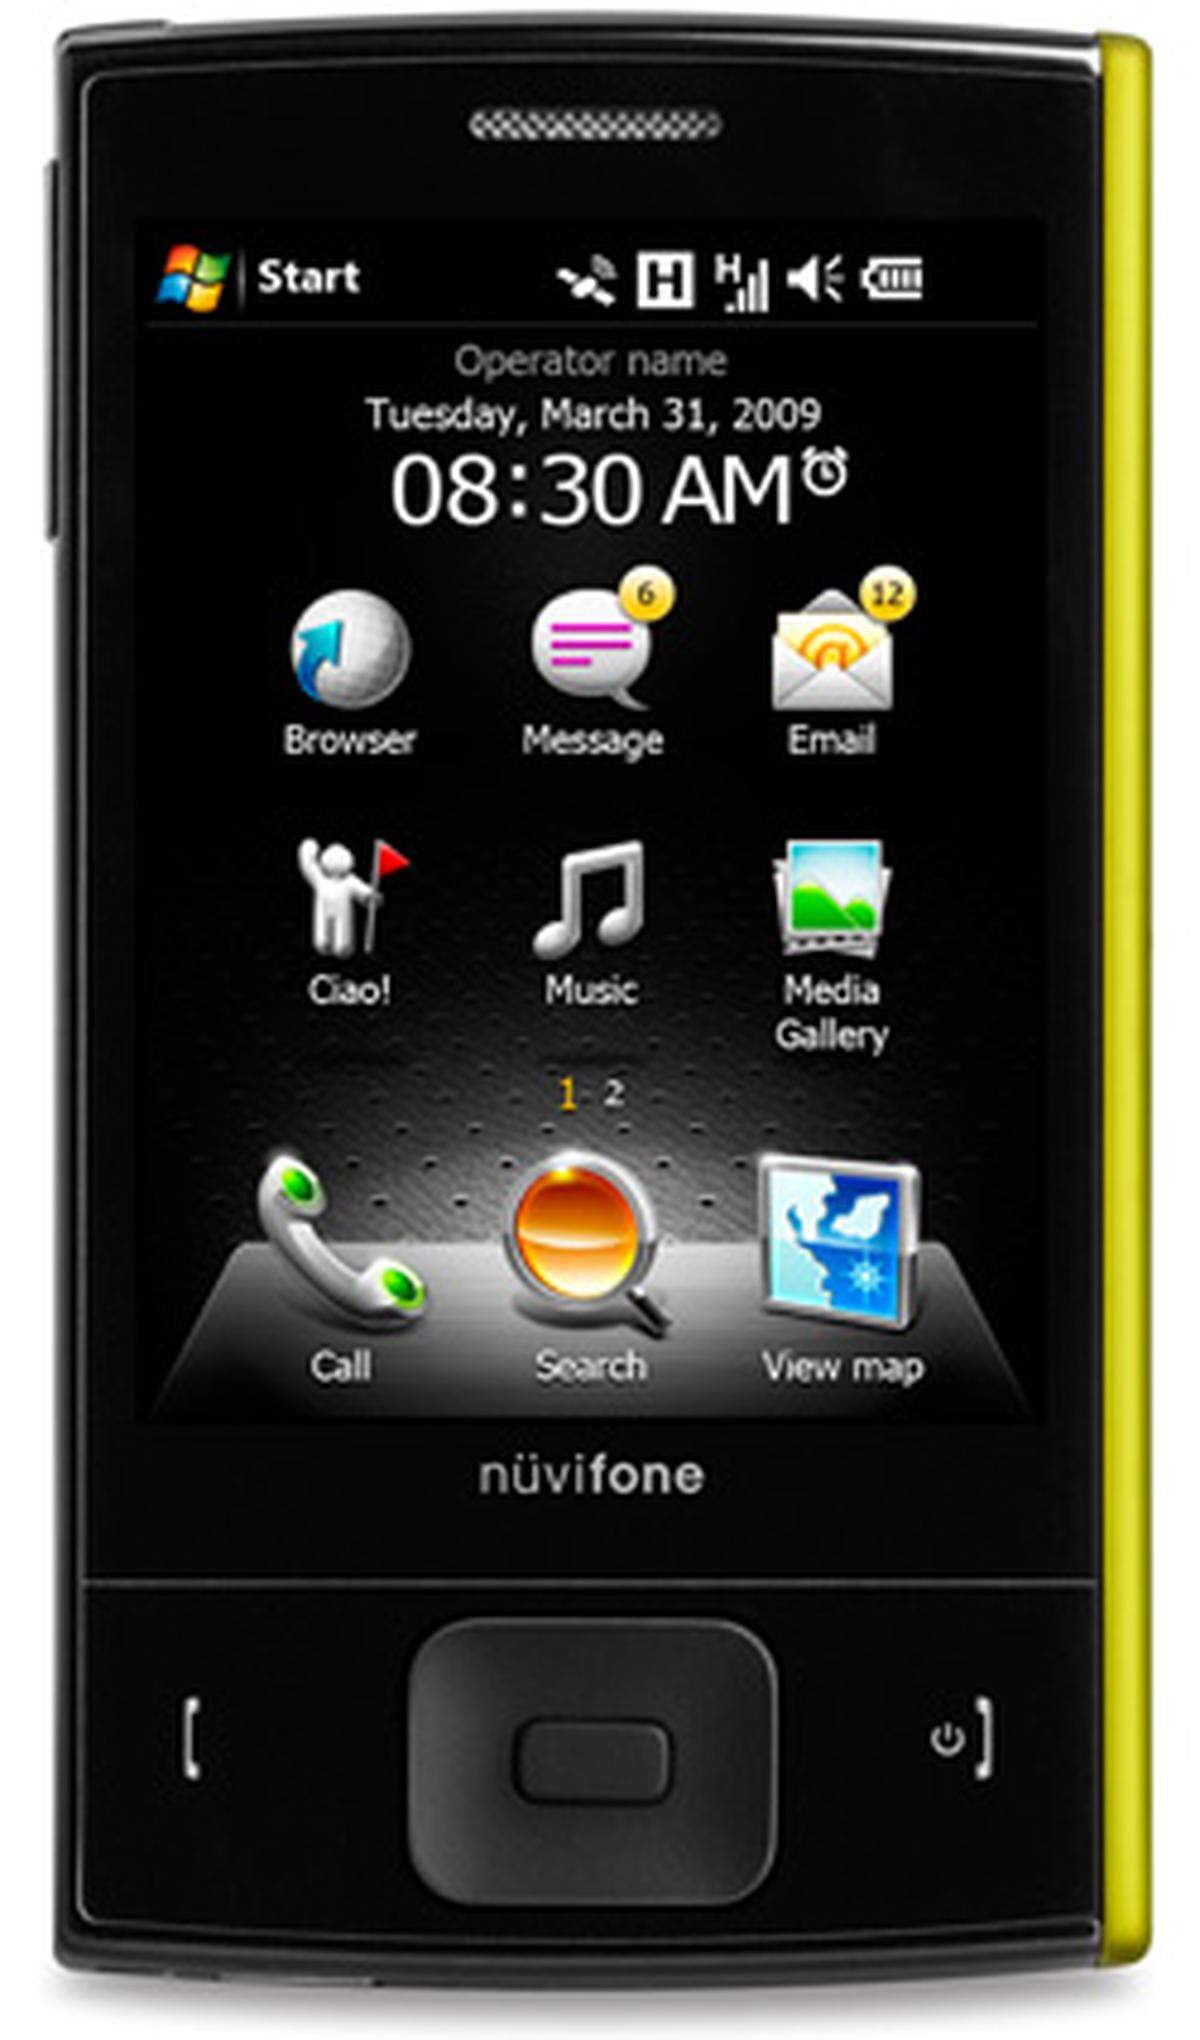 Etwas kleiner als das G60 und mit Windows Mobile 6.1 kommt das Nüvifone M20 in verschiendenen Farben. Für die Touchscreen-Eingabe haben die Entwickler eine eigene Benutzeroberfläche gestaltet. Dank Unterstützung von Navigations-Spezialist Garmin fungieren die Nüvifones auch als Navi.